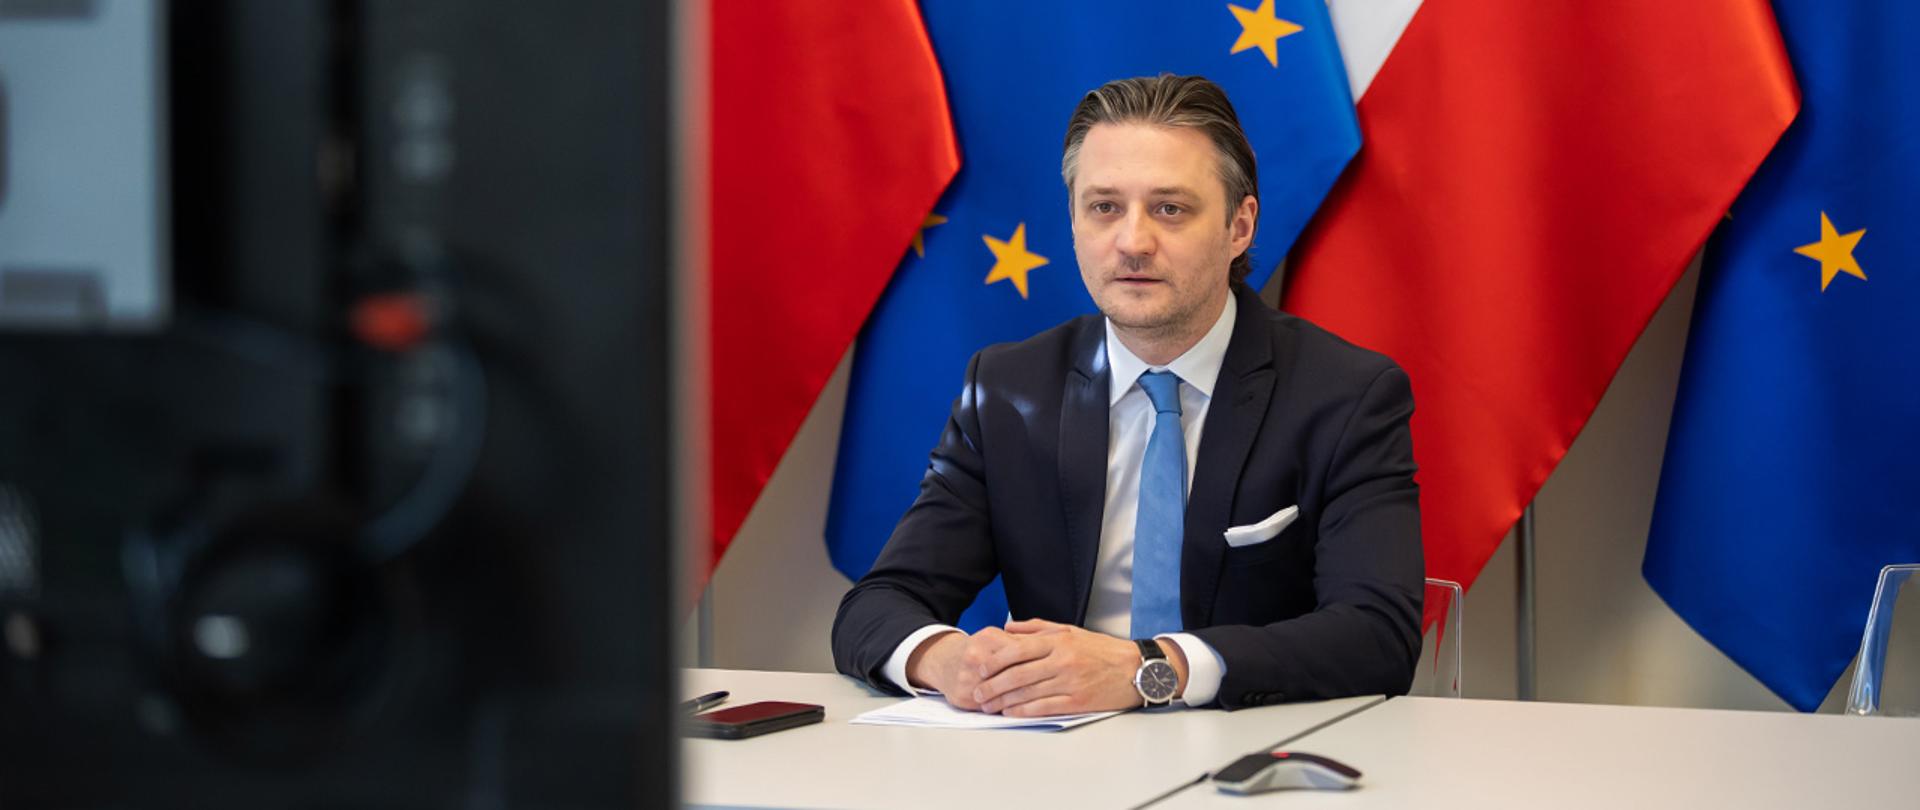 Na zdjęciu widać wiceministra Bartosza Grodeckiego siedzącego za stołem na tle flag Polski i UE.